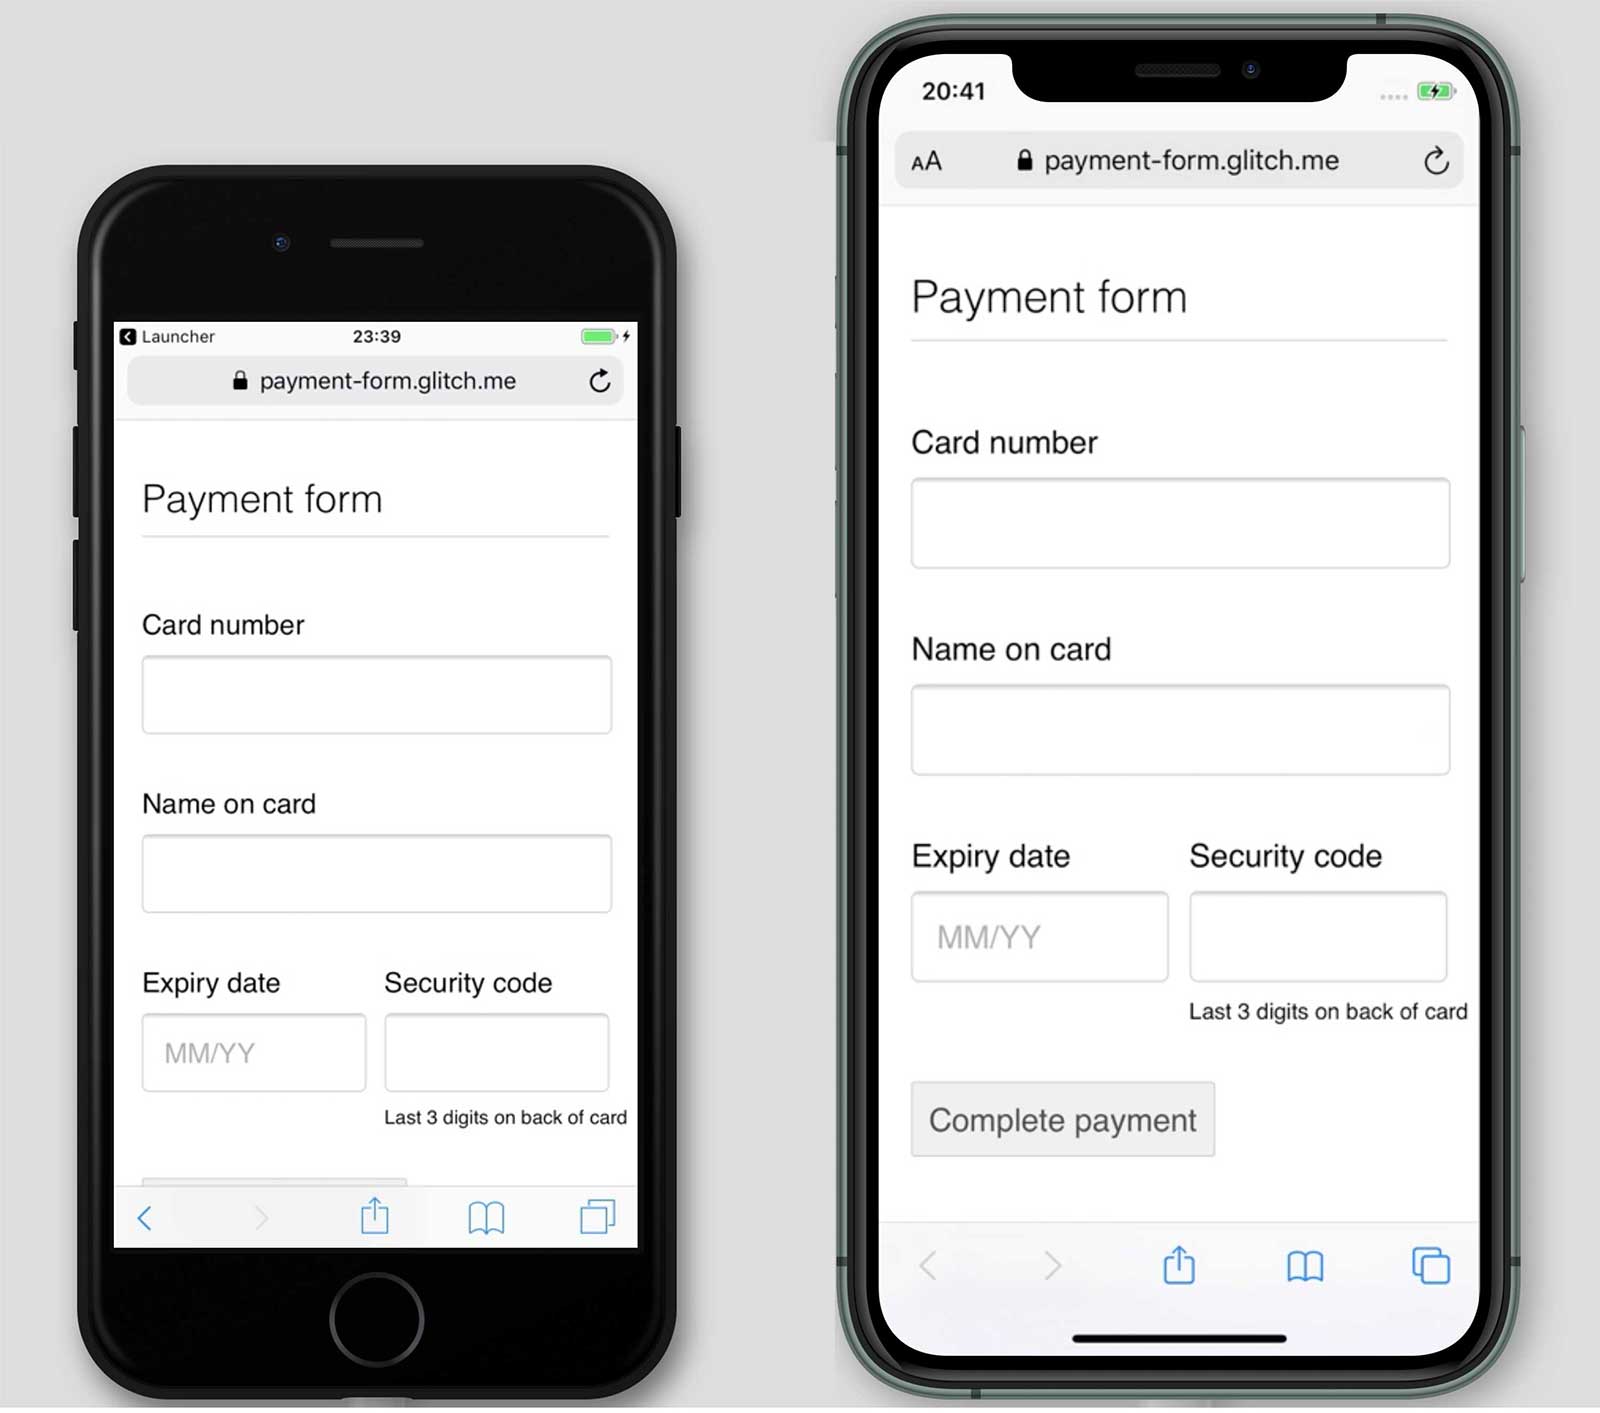 Снимки экрана формы оплаты pay-form.glitch.me на iPhone 7 и 11. Кнопка «Завершить платеж» отображается на iPhone 11, но не на iPhone 7.